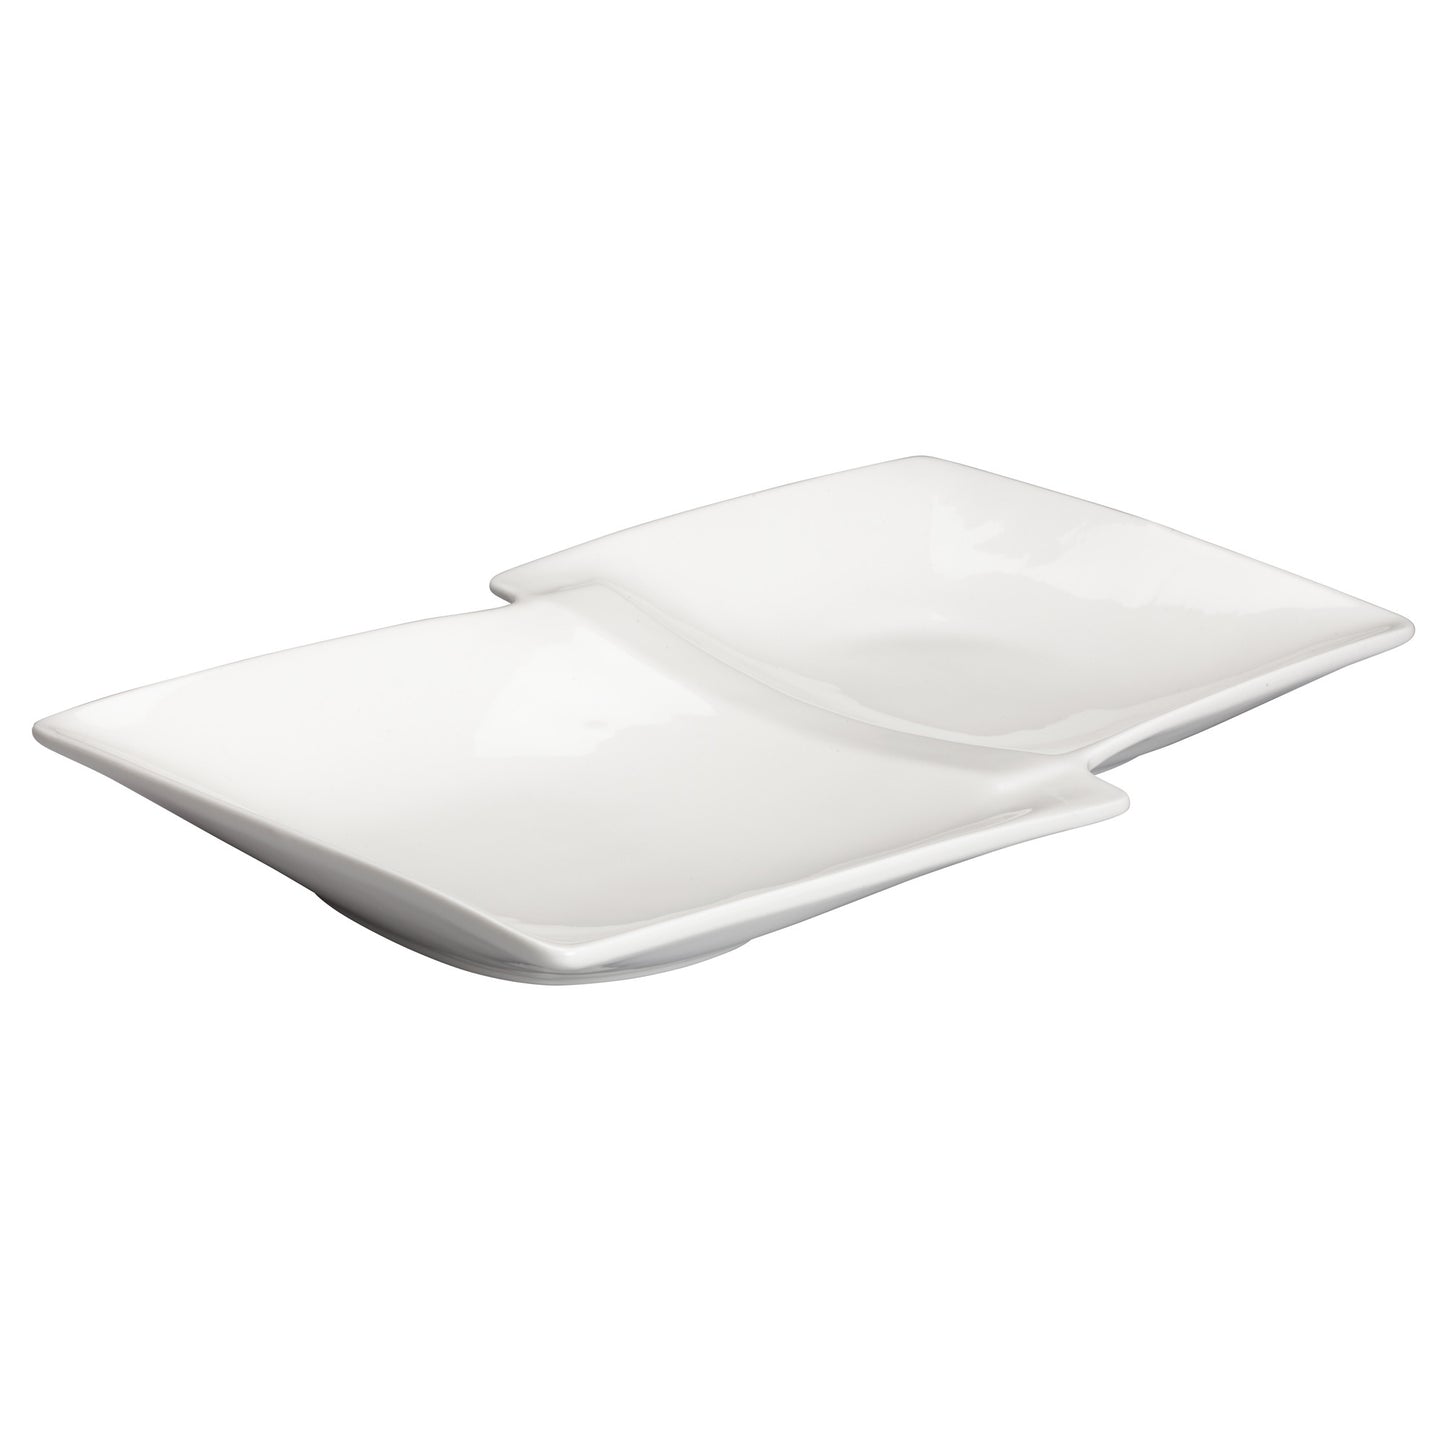 WDP017-109 - 13-7/8" x 8" Porcelain Duo Plate, Bright White, 12 pcs/case